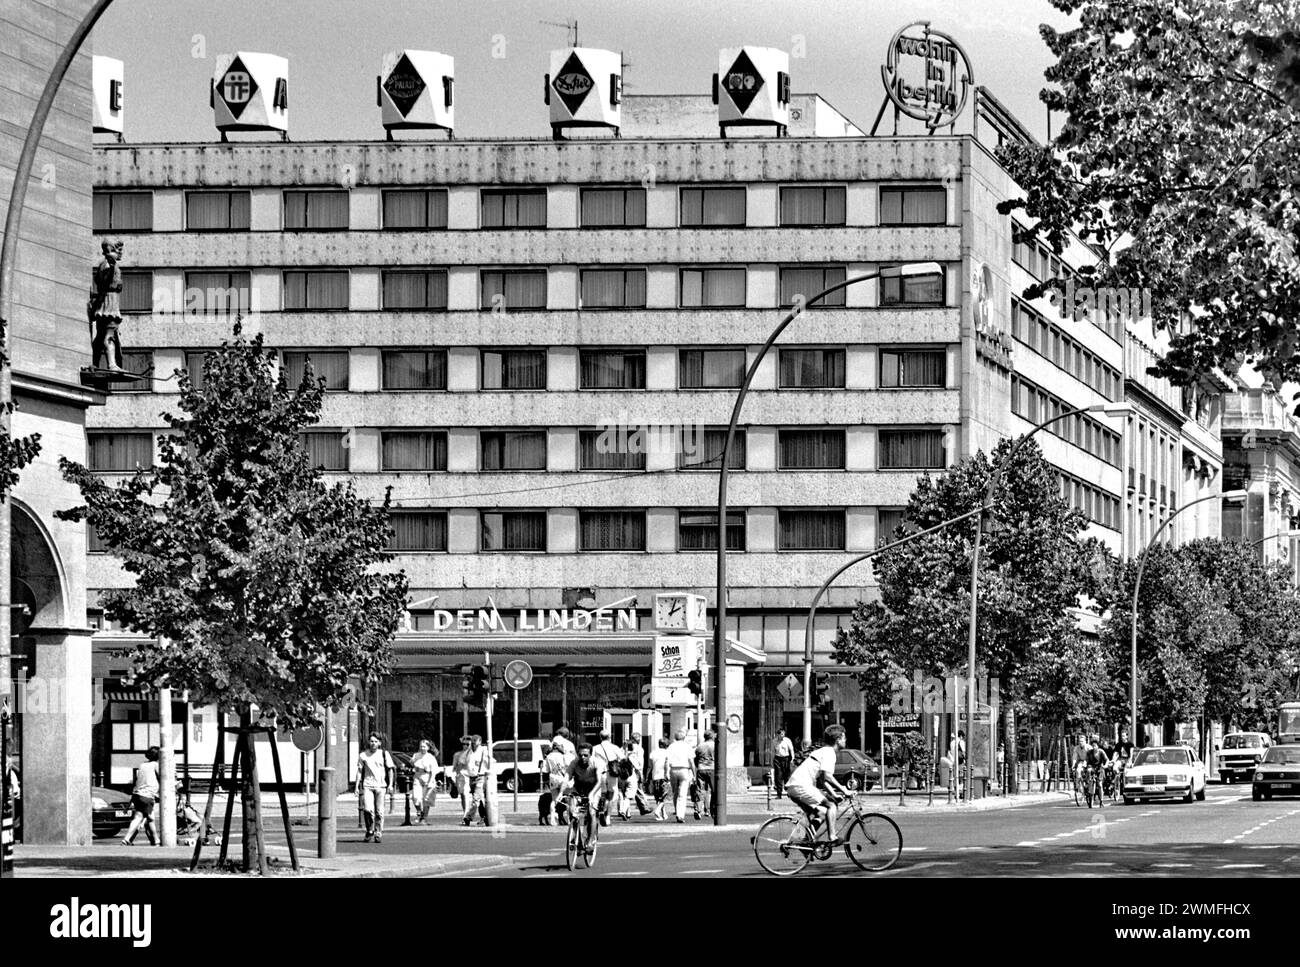 Hotel Unter den Linden in July 1995, Friedrichstrasse corner Unter den Linden, Mitte district, Berlin, Germany Stock Photo